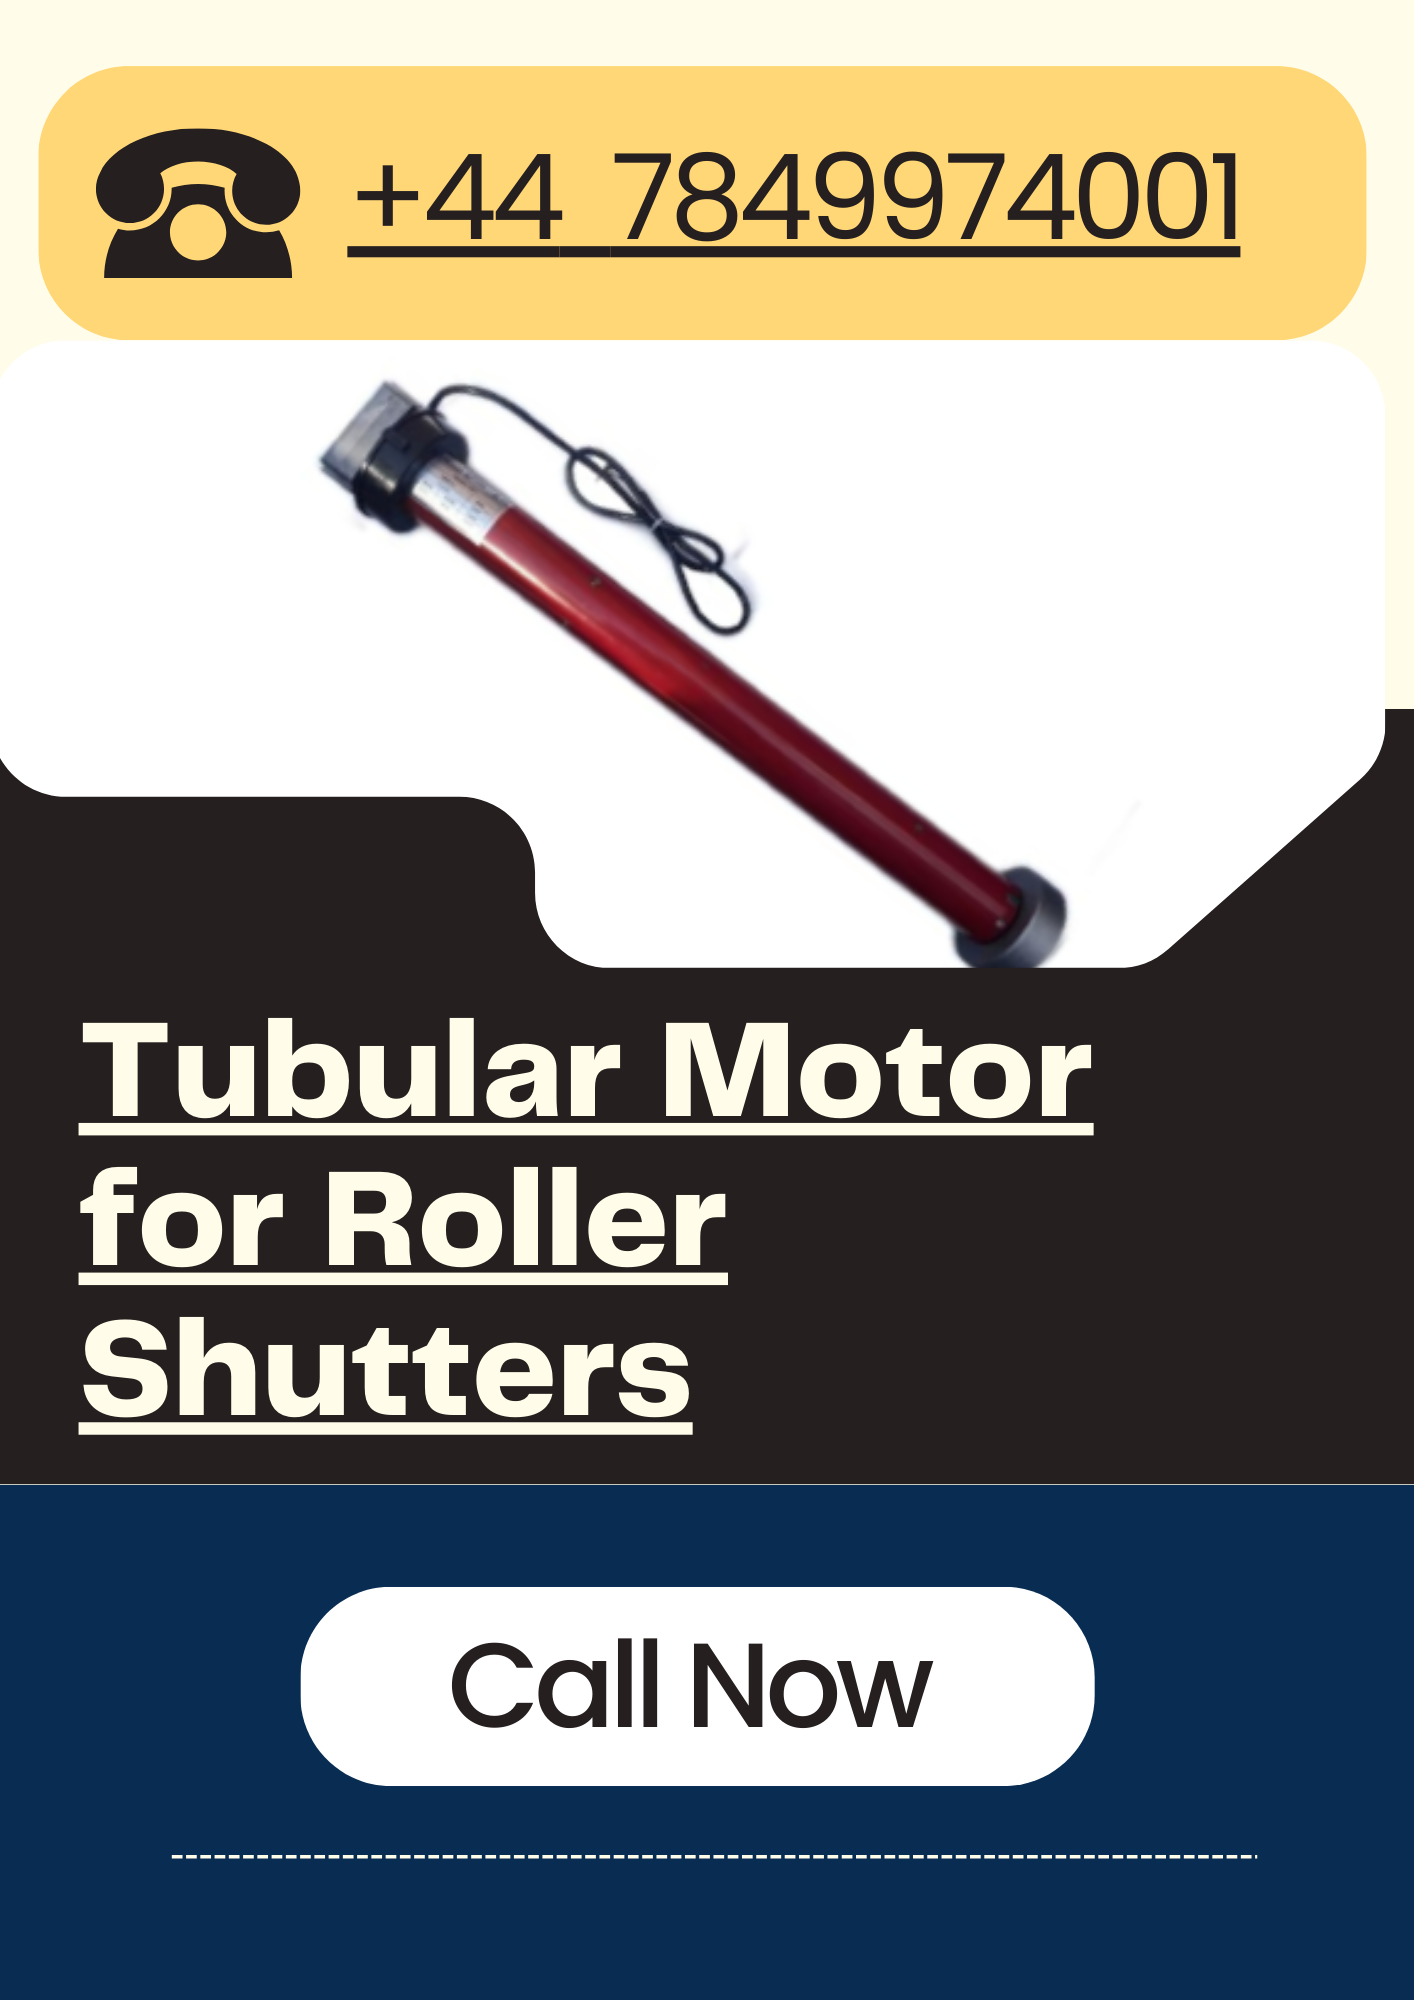 Tubular Motor for Roller Shutters